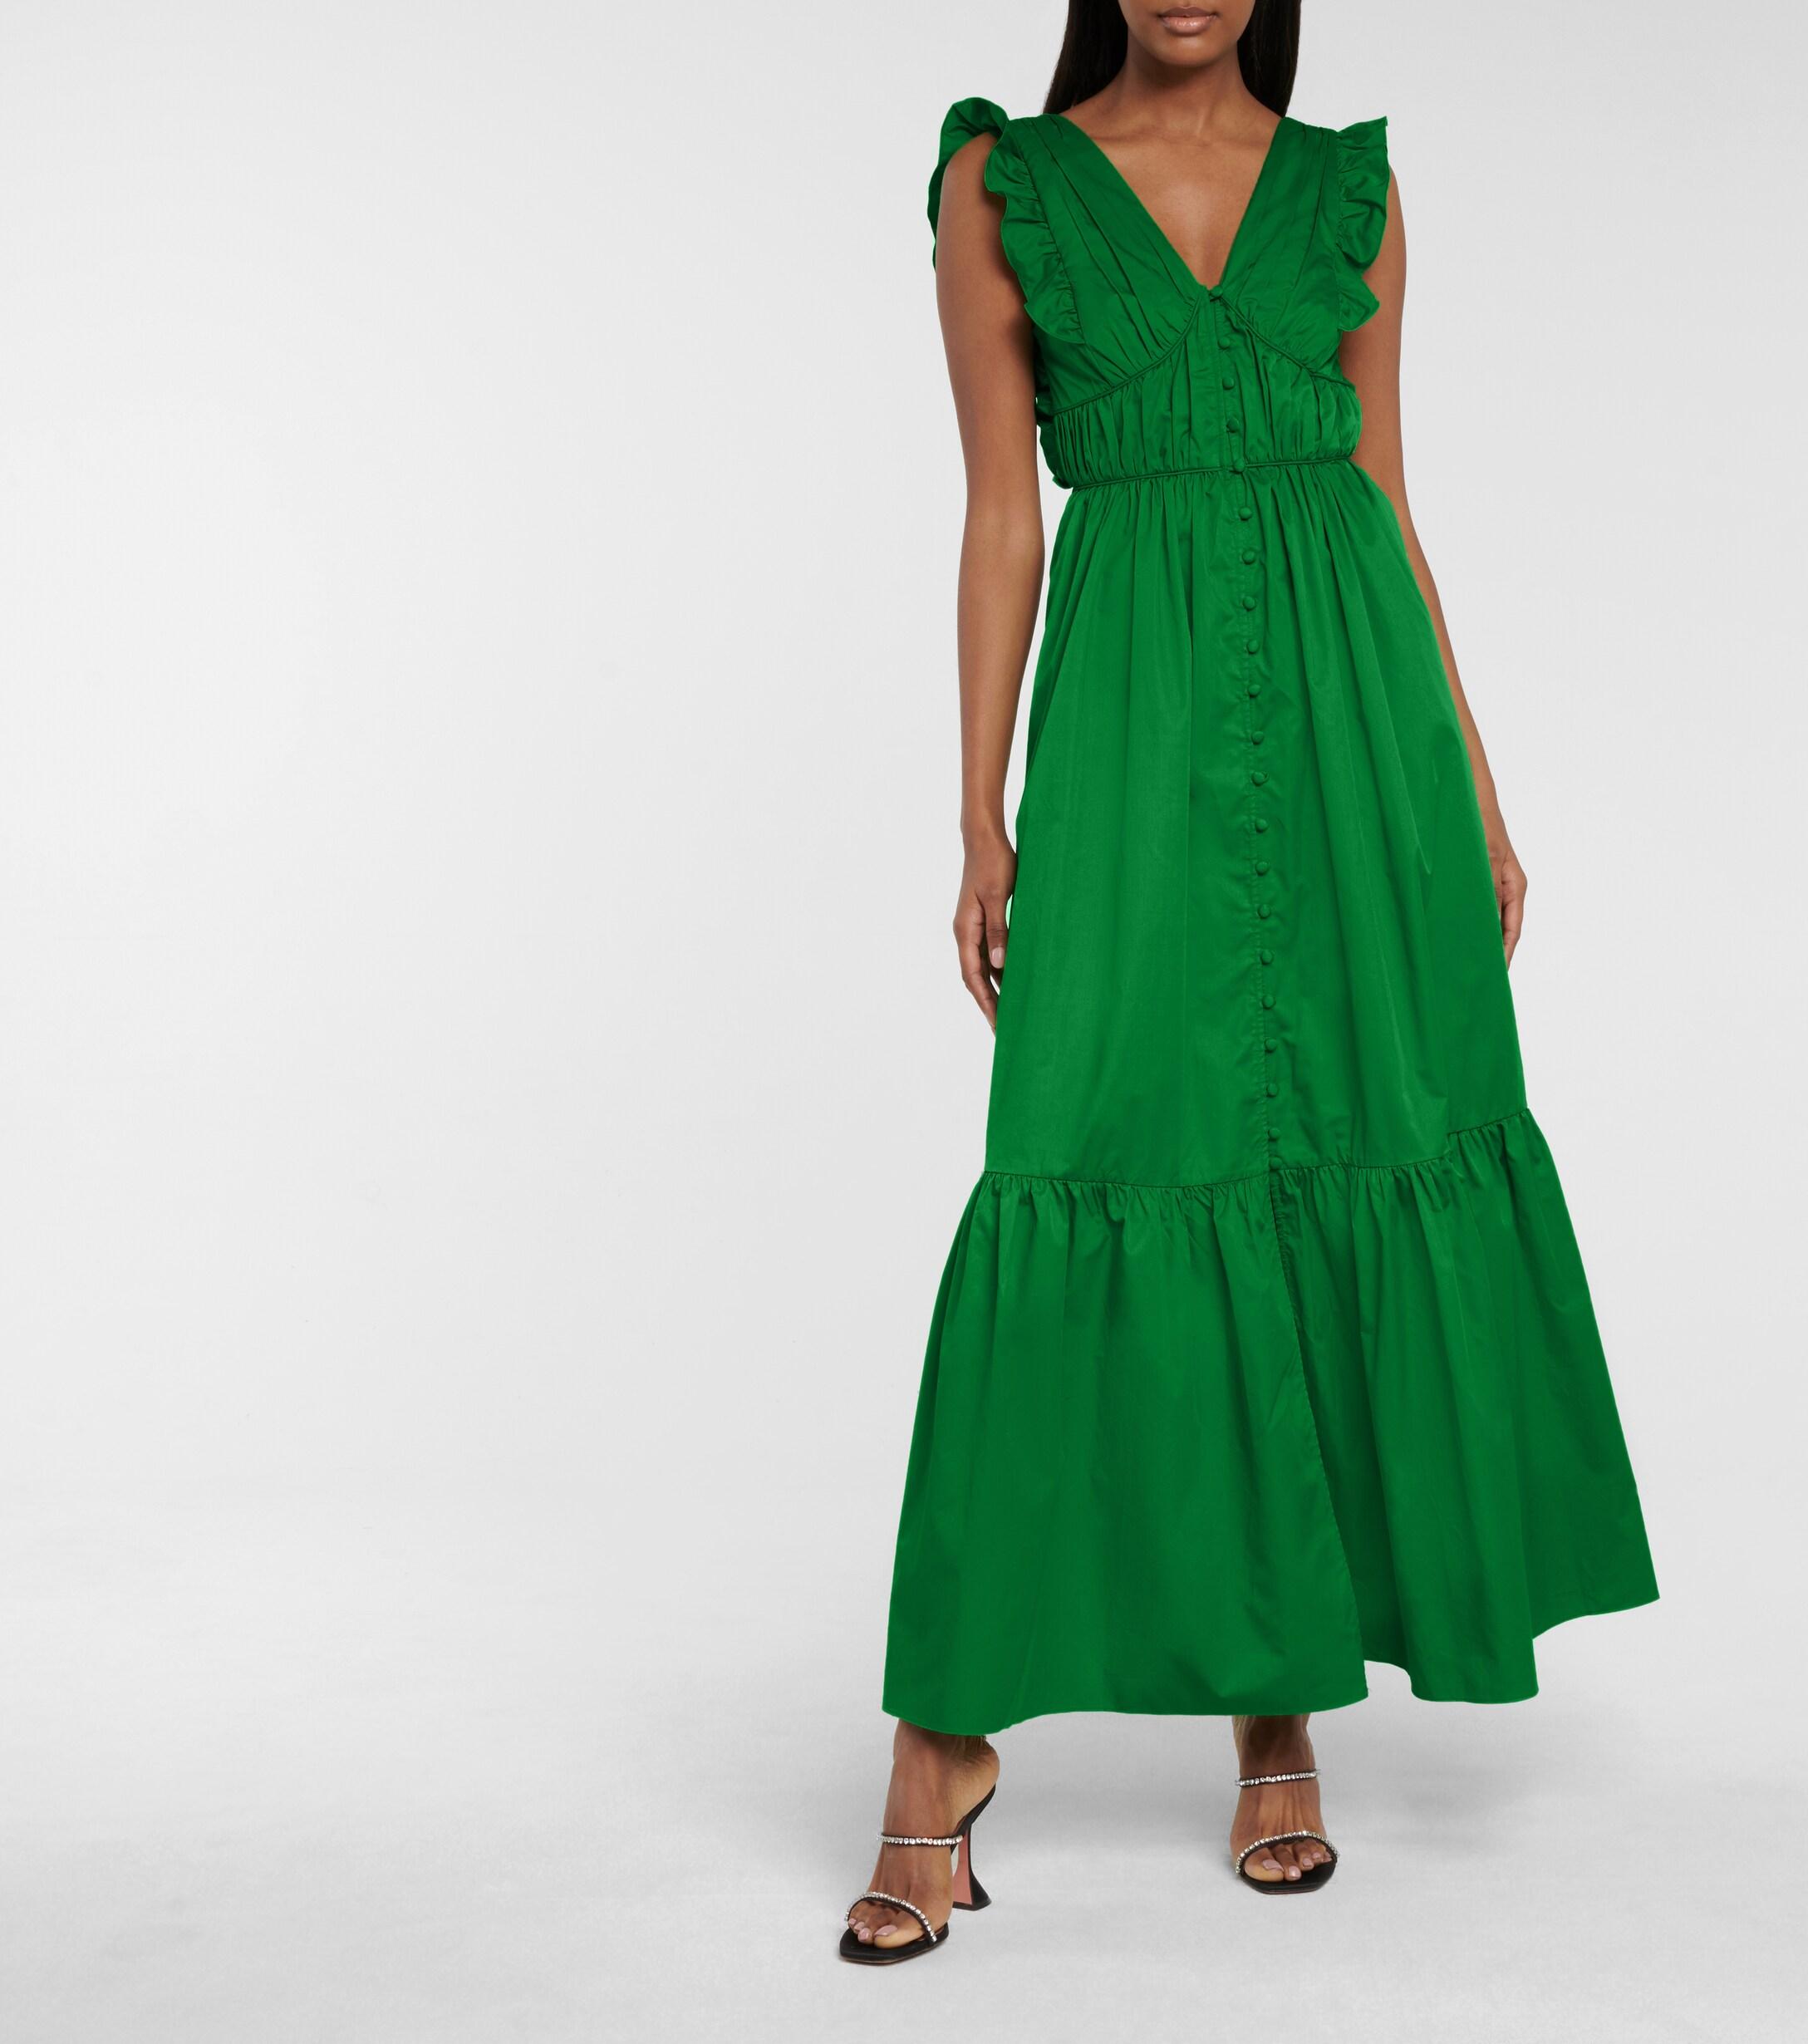 Aggregate more than 166 green cotton dress super hot - seven.edu.vn